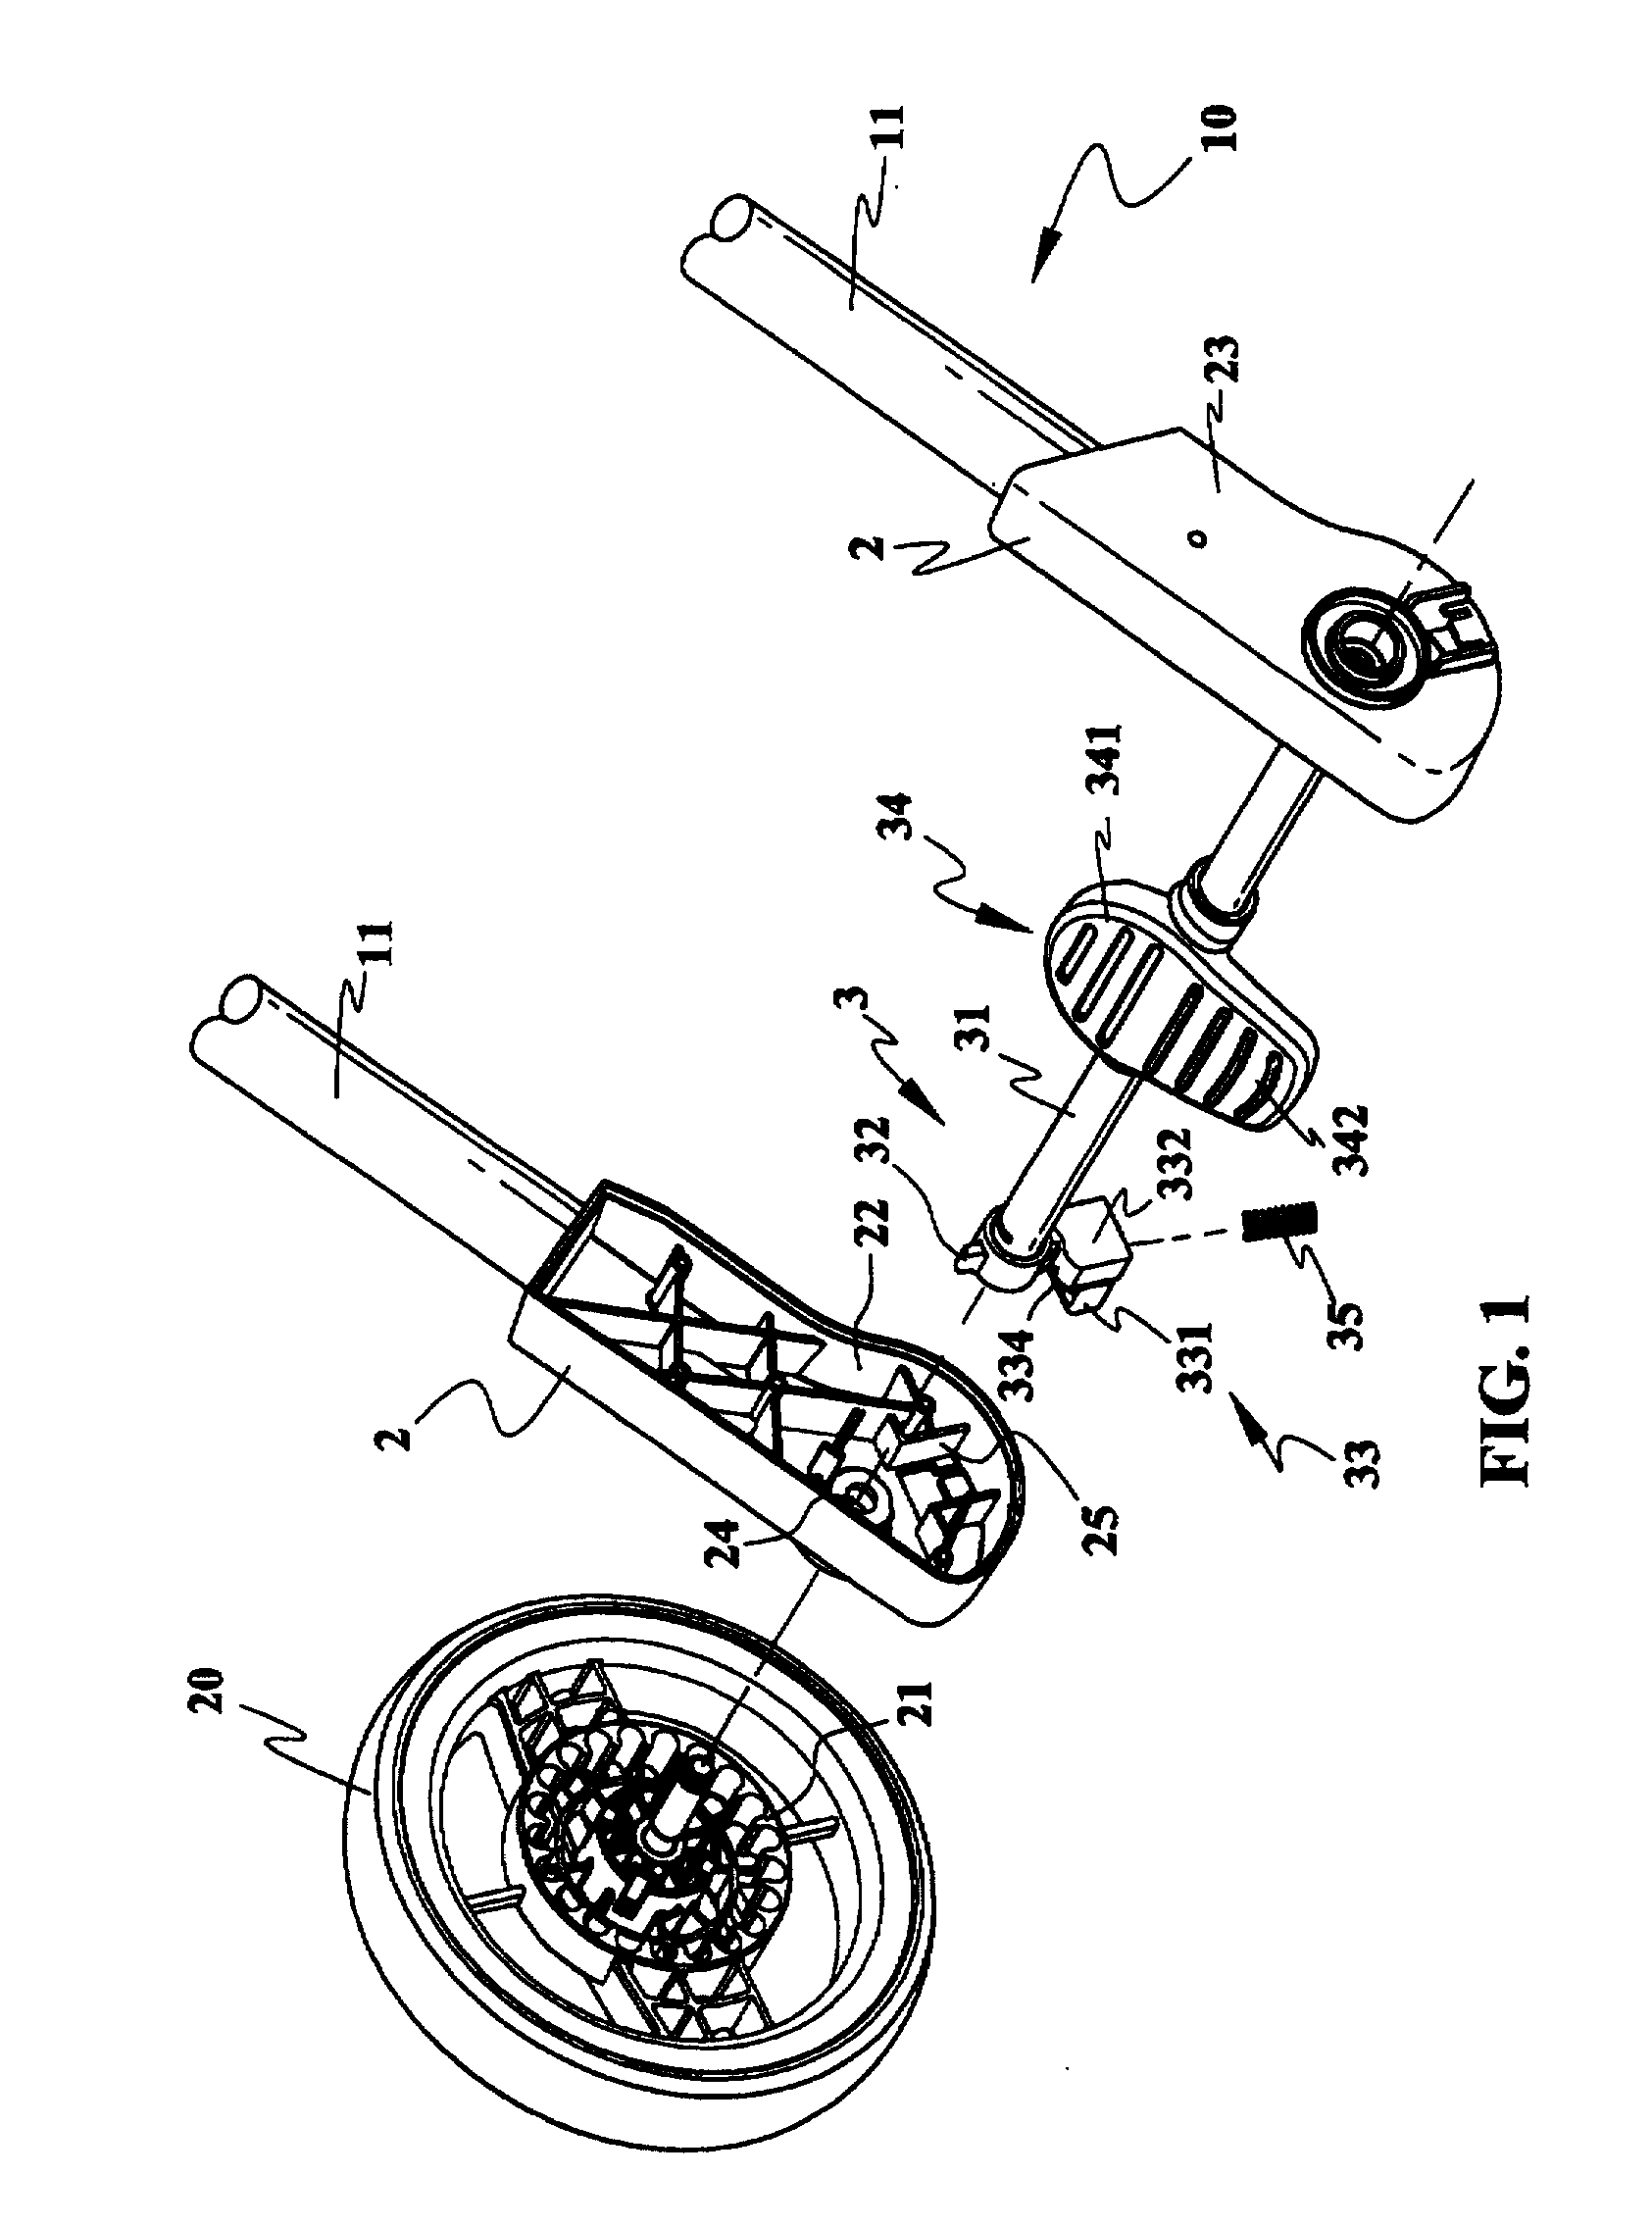 Wheel brake mechanism for a baby stroller